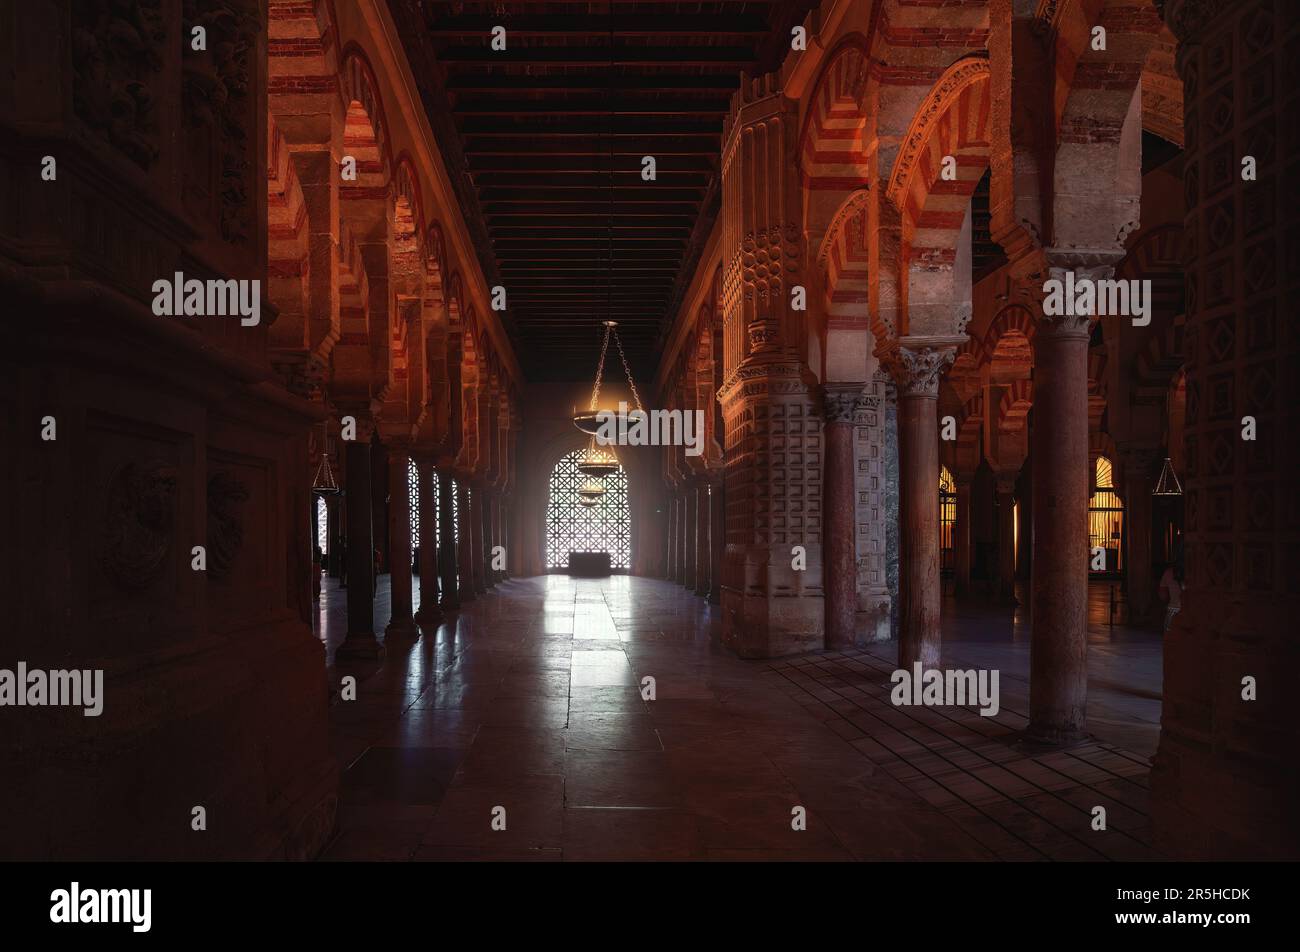 Archi, colonne e pannelli di lattice alla moschea-cattedrale di Cordoba - Cordoba, Andalusia, Spagna Foto Stock